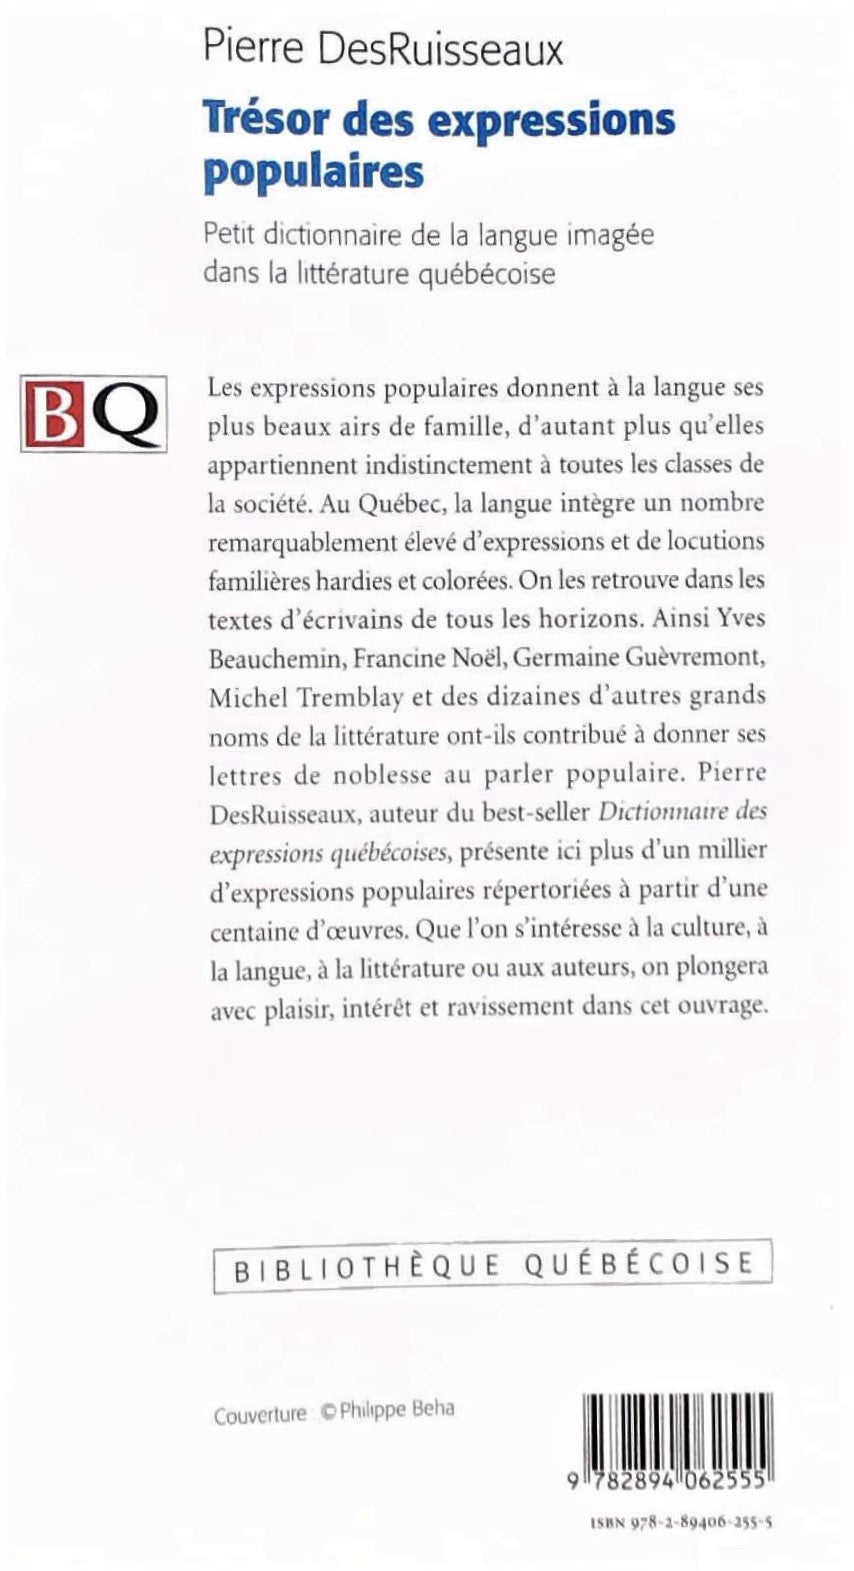 Trésor des expressions populaires : Petit dictionnaire de la langue imagée dans la littérature québécoise (Pierre DesRuisseaux)